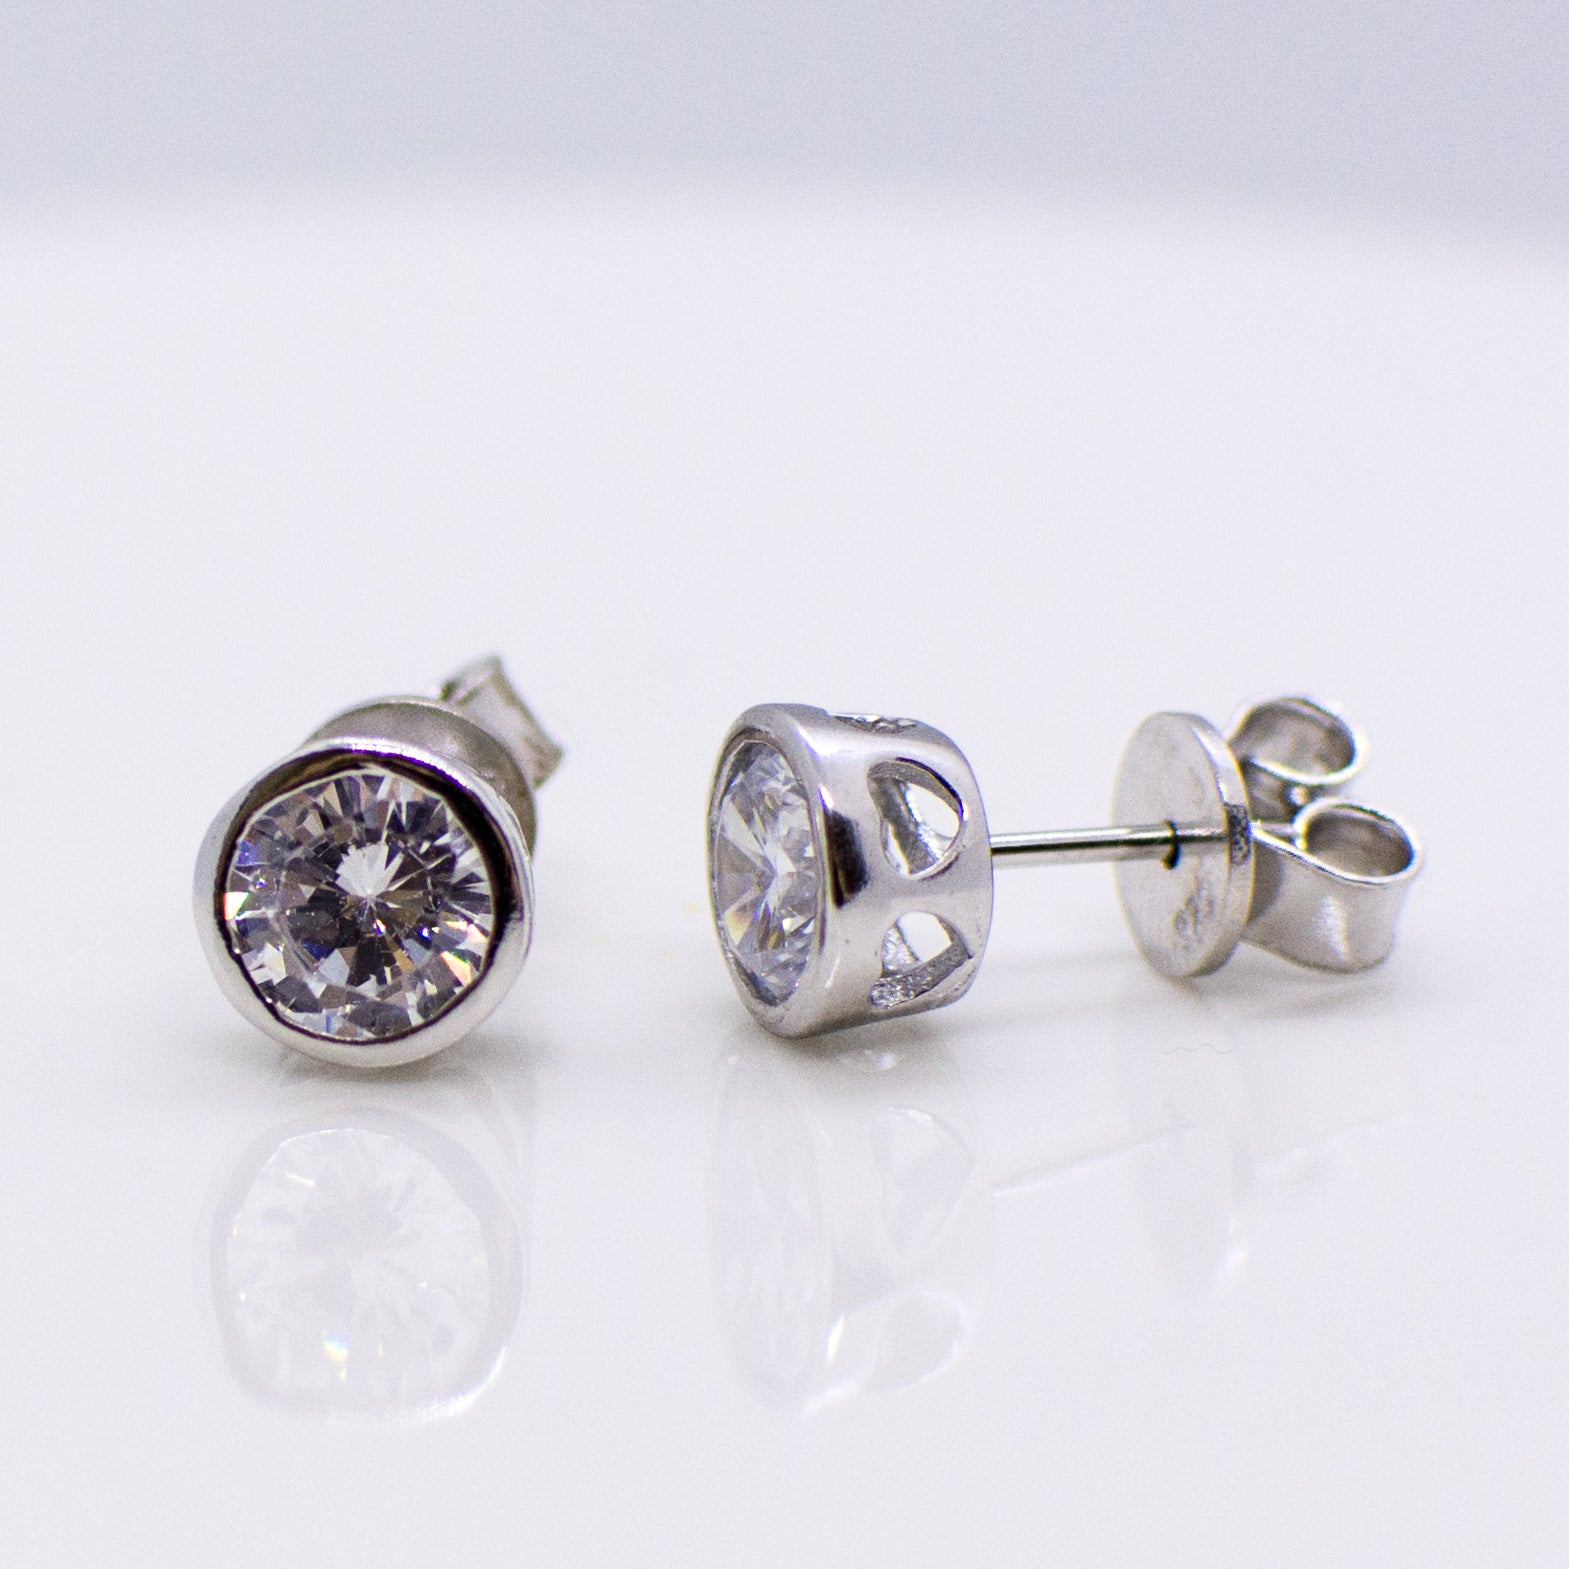 Silver 6mm CZ Stud Earrings with Heart Bezel - John Ross Jewellers